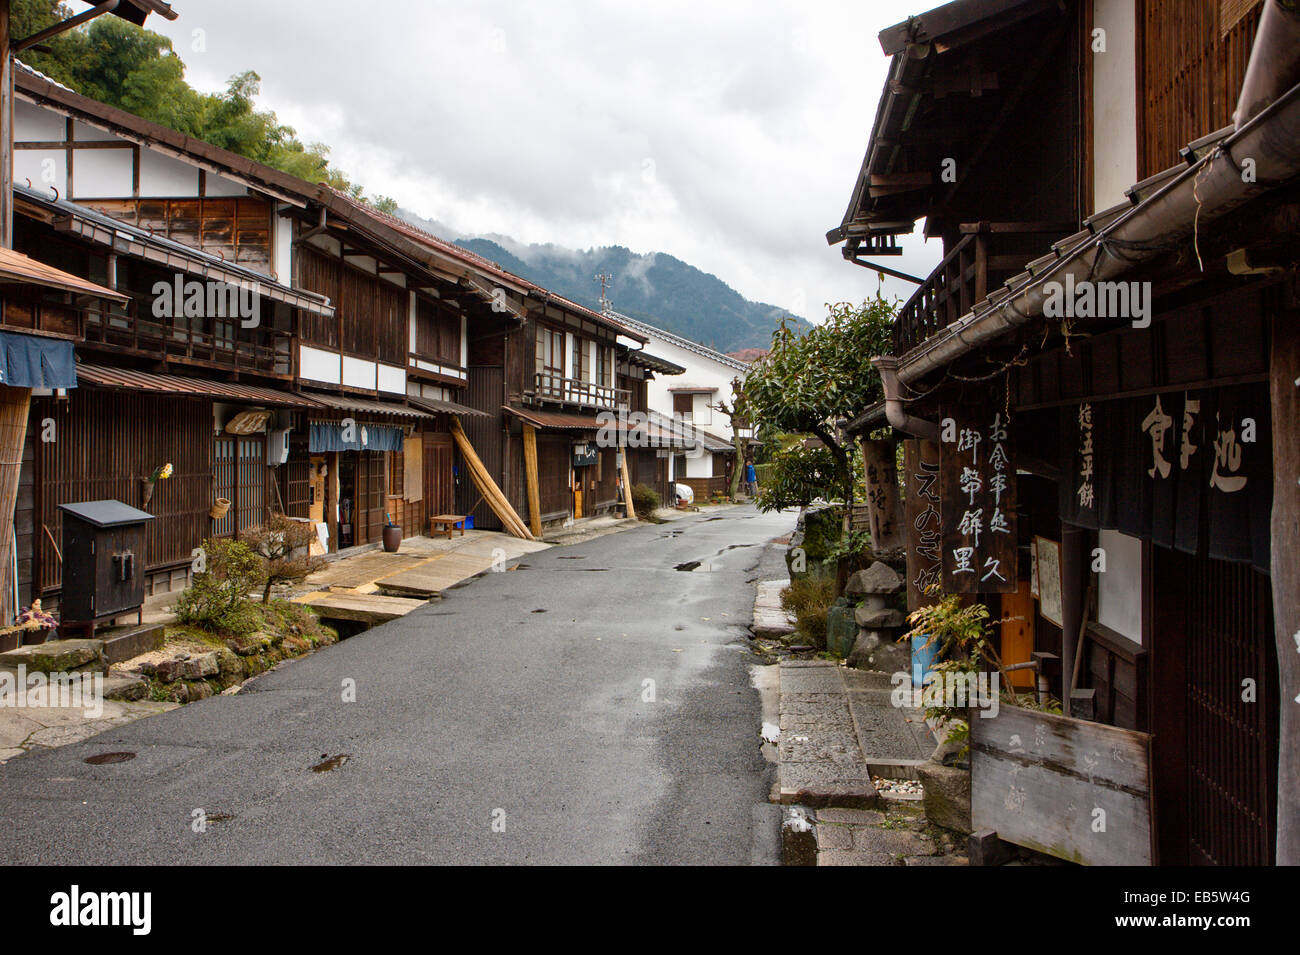 Calle Terashita en Tsumago, Japón, parte de la autopista Nakasendo del período Edo, con edificios de madera que incluyen ryokan, posadas, minshuku y tiendas. Foto de stock